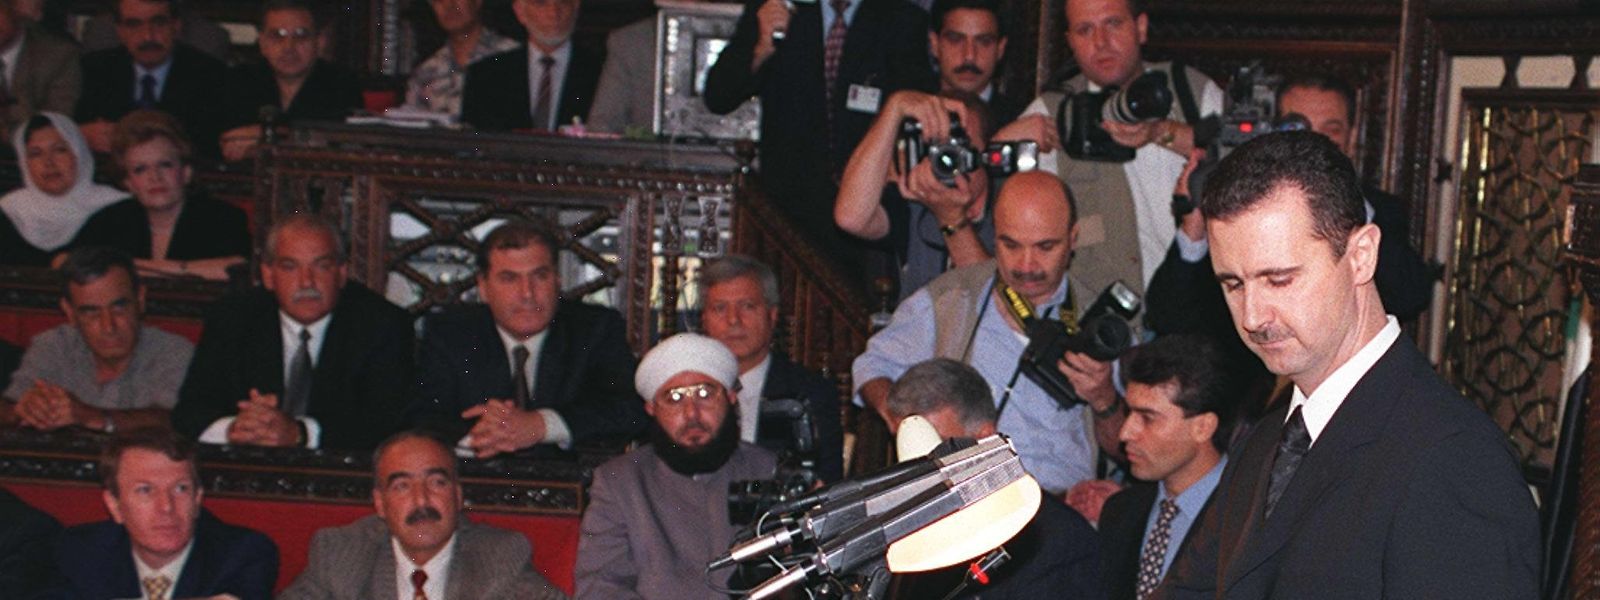 Syriens neuer Präsident Baschar al Assad leistete am 17. Juli 2000 den Amtseid beim syrischen Parlament in Damaskus.